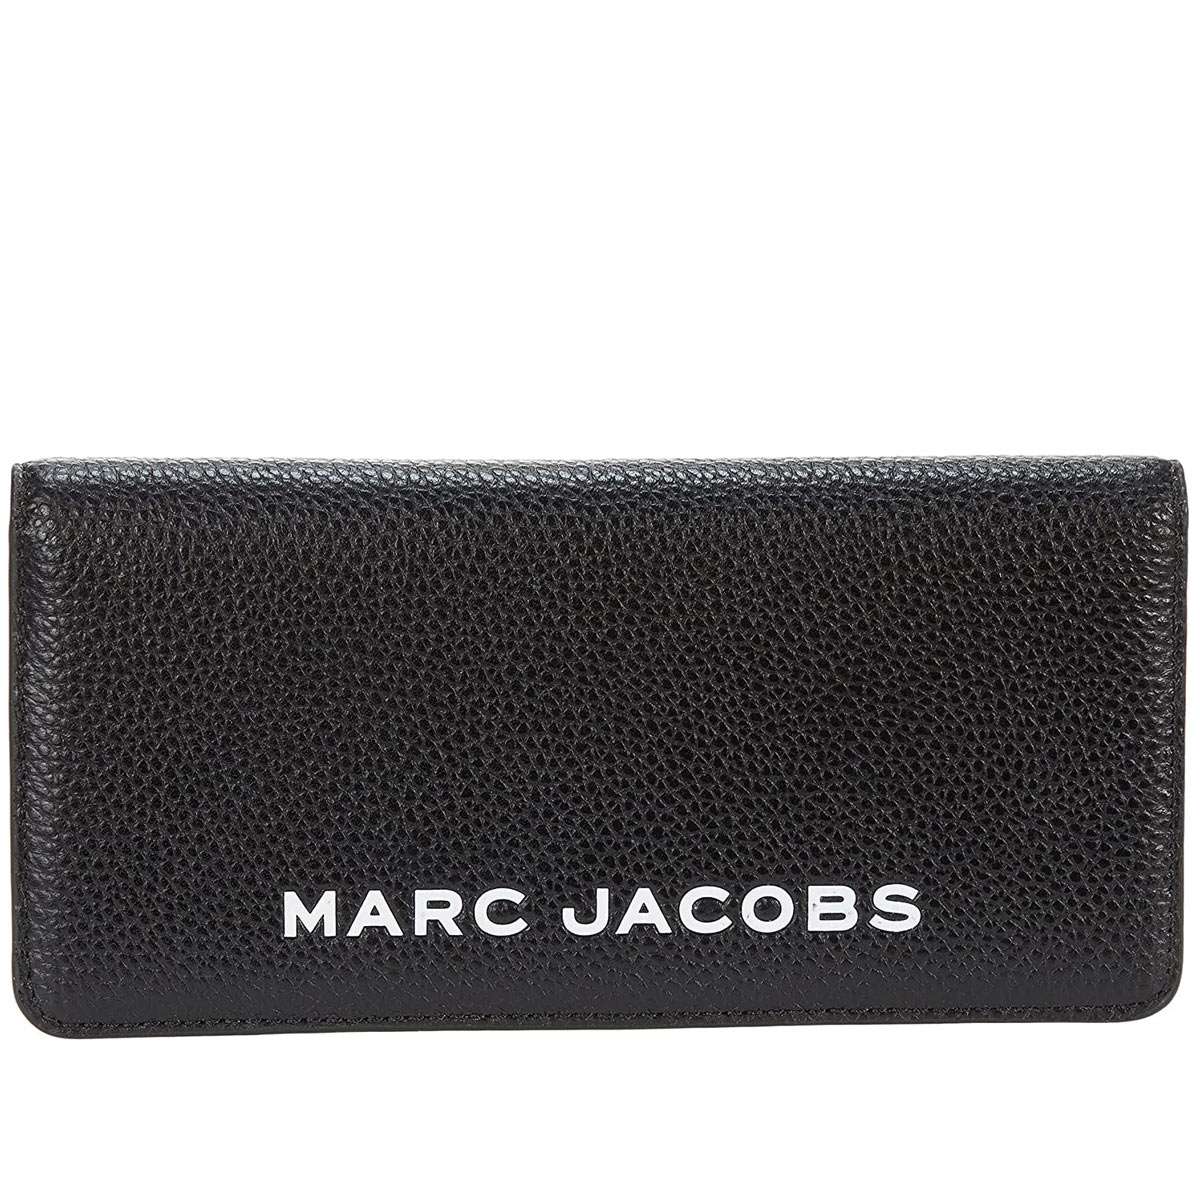 マークジェイコブス 長財布 レディース 財布 ブランド 本革 新品 大きめ 大容量 Marc Jacobs